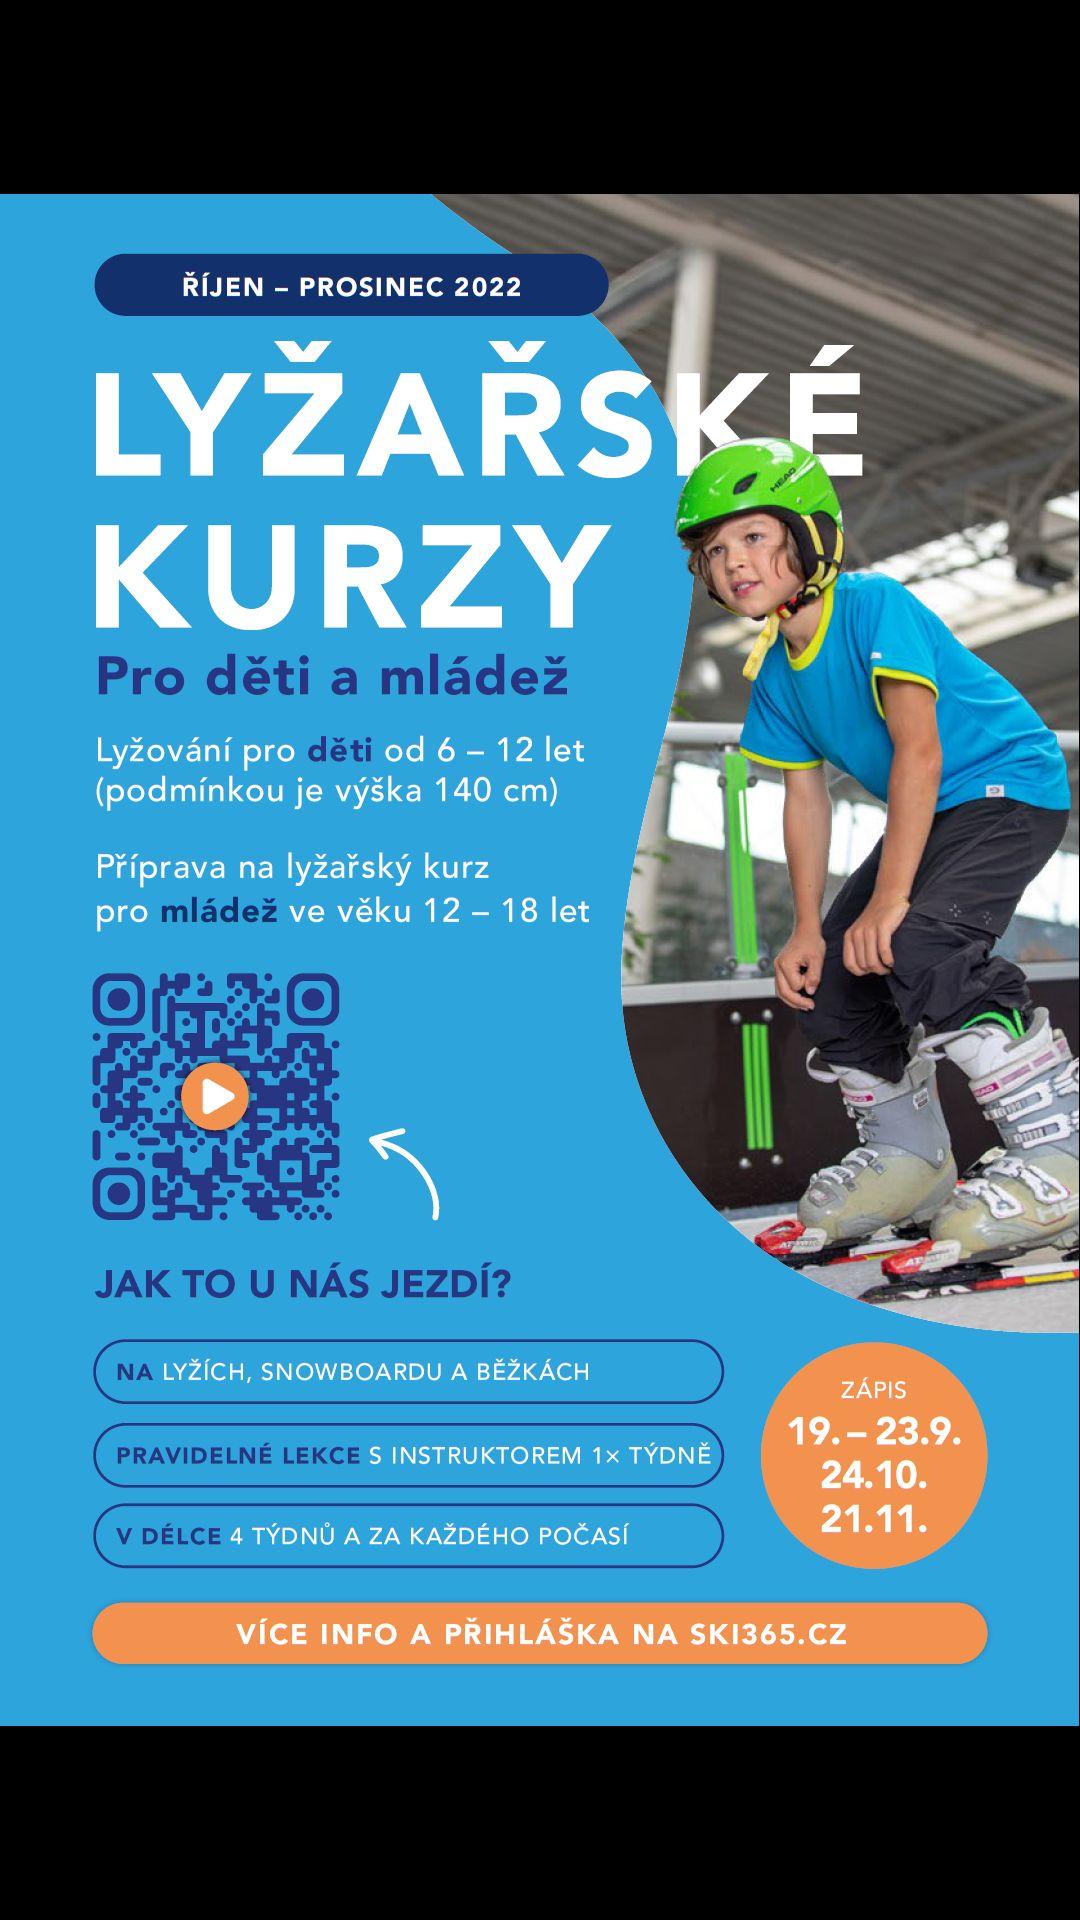 SKI365 lyžařská a snowboard škola